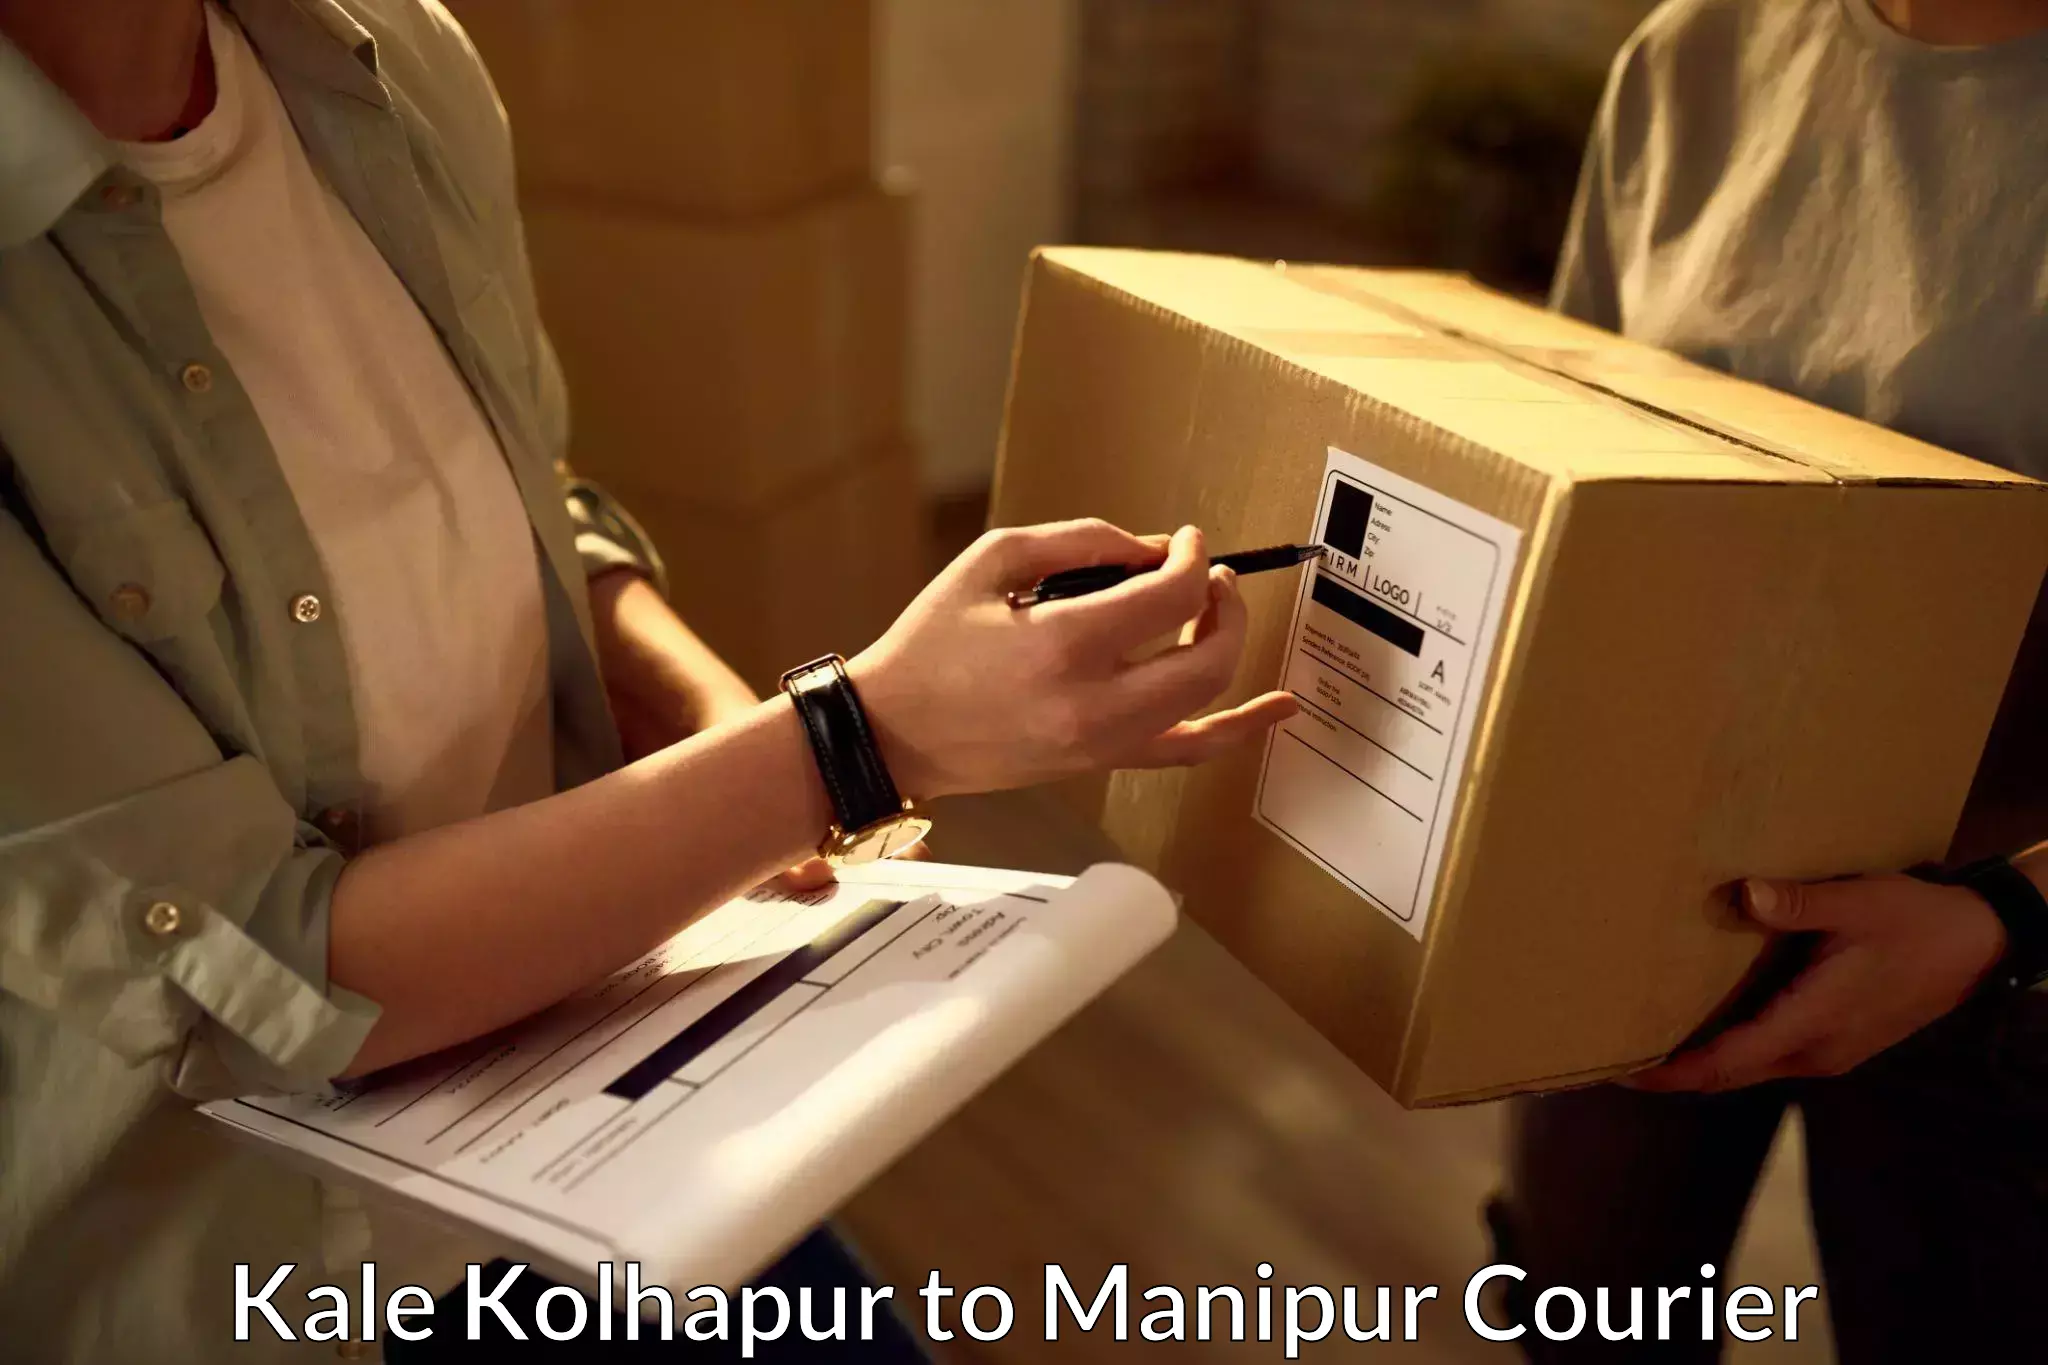 Pharmaceutical courier Kale Kolhapur to Senapati